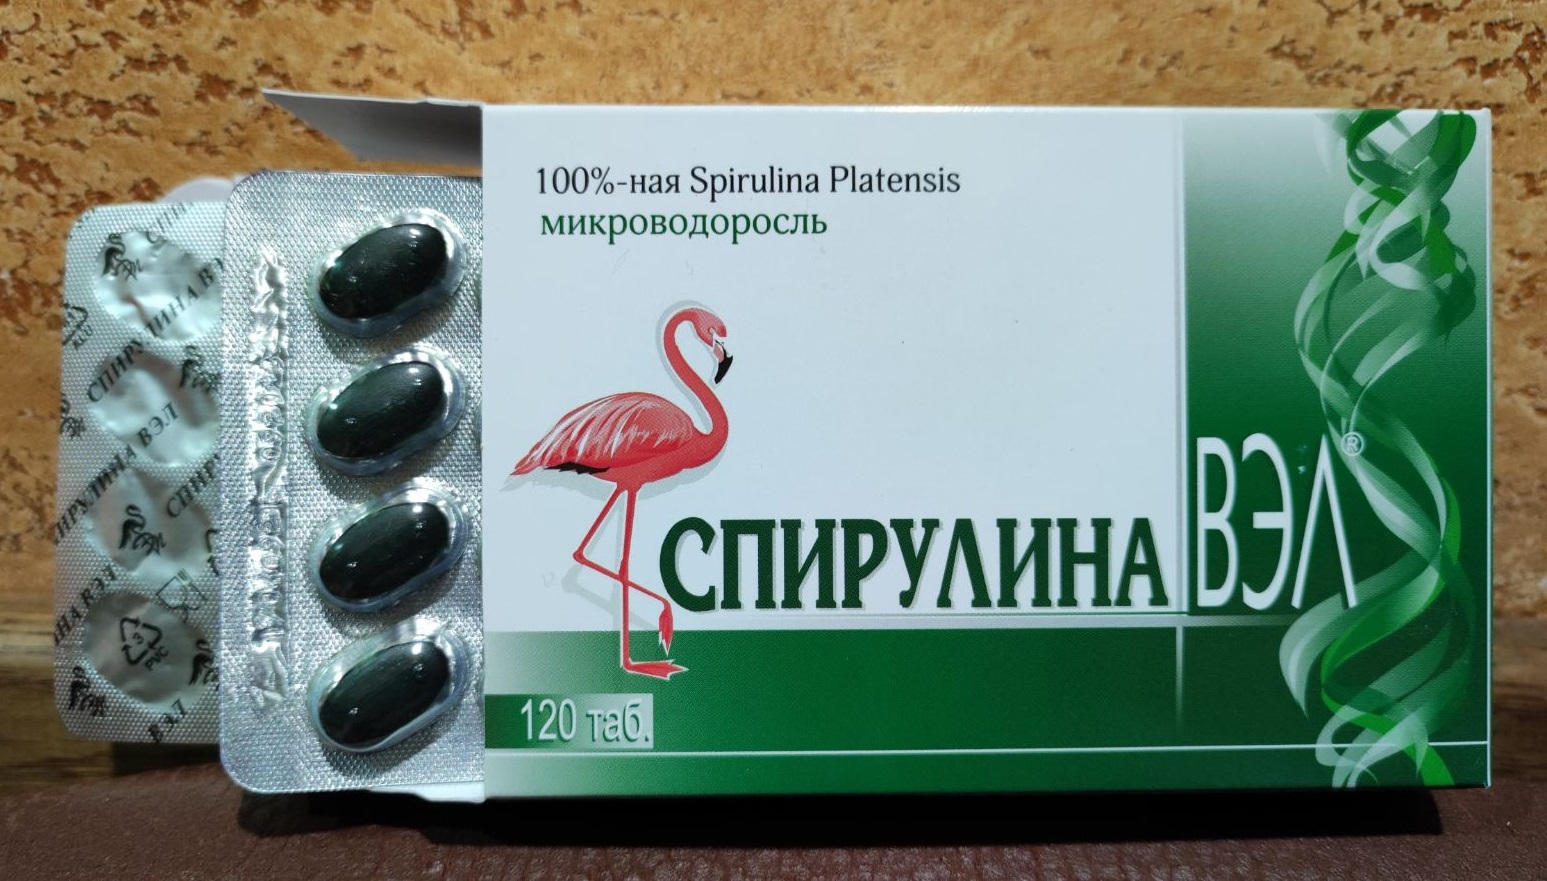 Спирулина Вэл 120 таблеток - улучшает иммунитет, снижает риск развития простудных инфекционных заболеваний